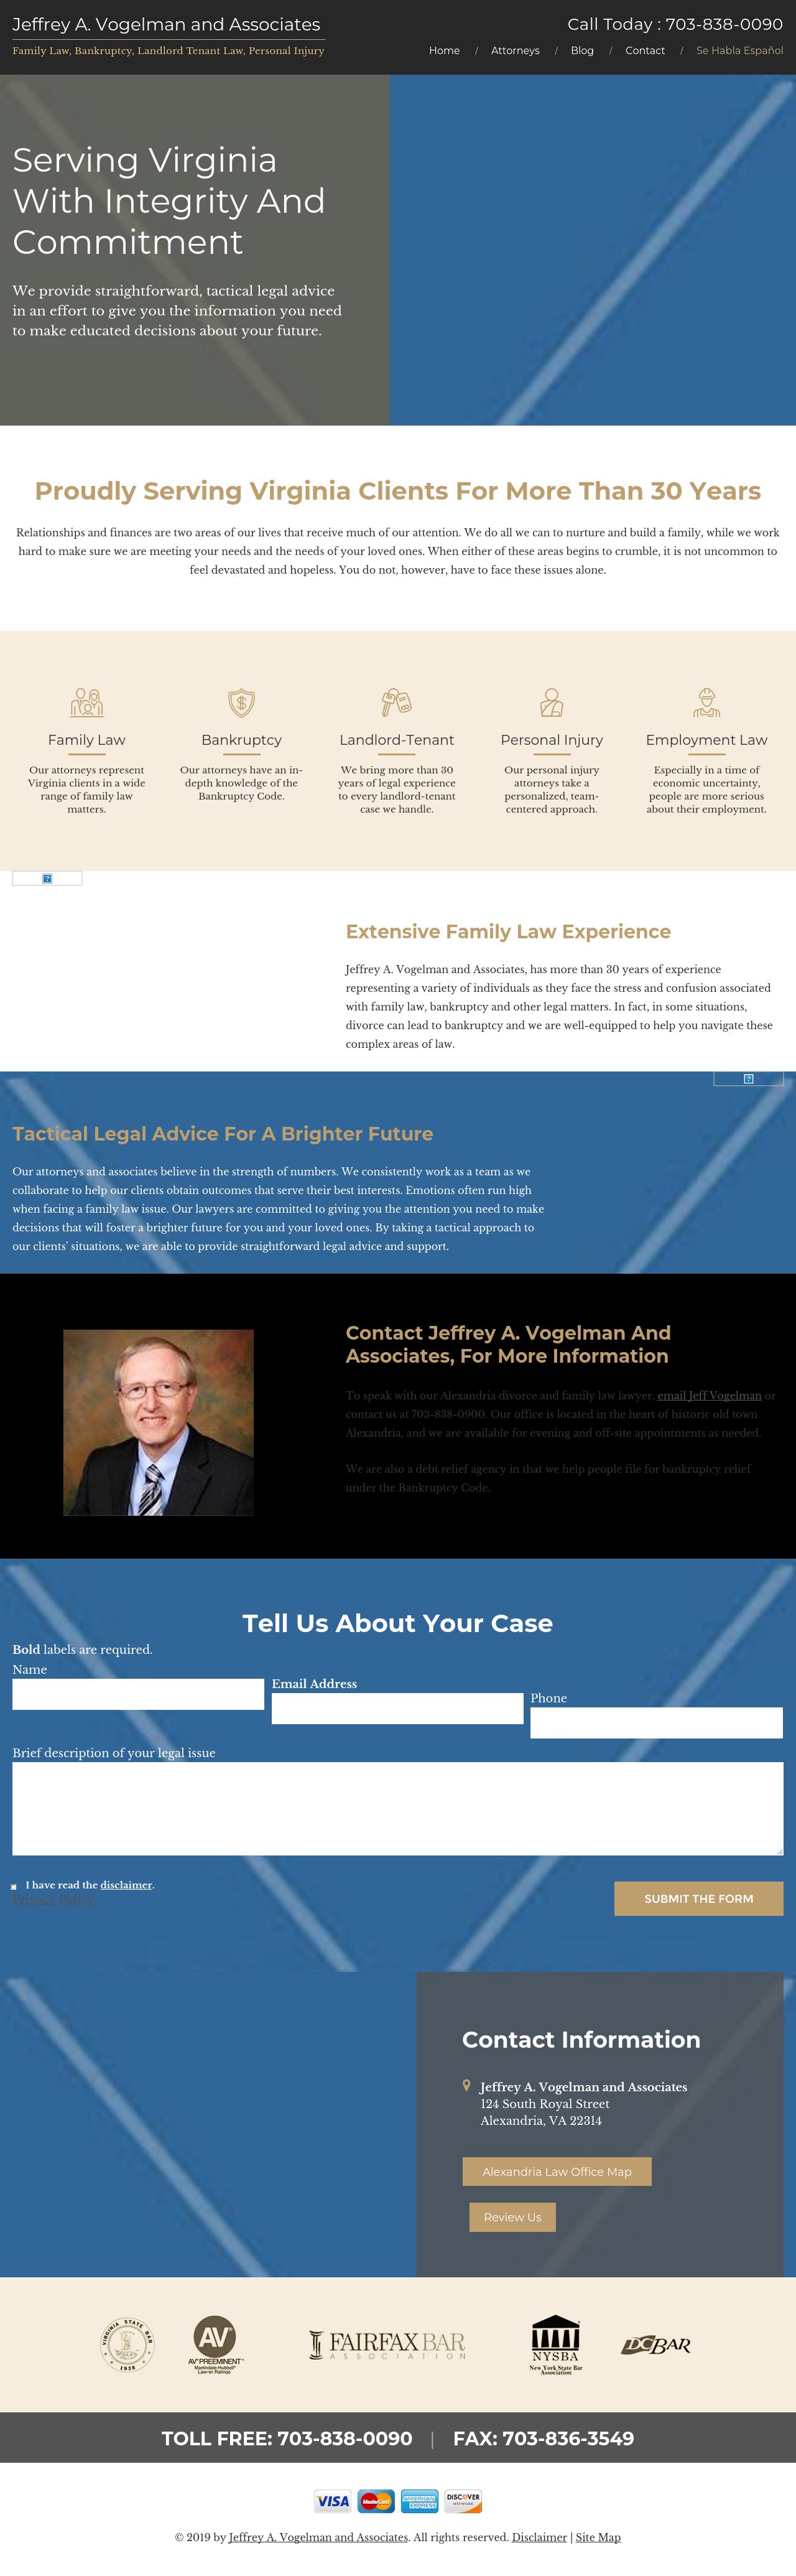 Jeffrey A. Vogelman and Associates - Alexandria VA Lawyers